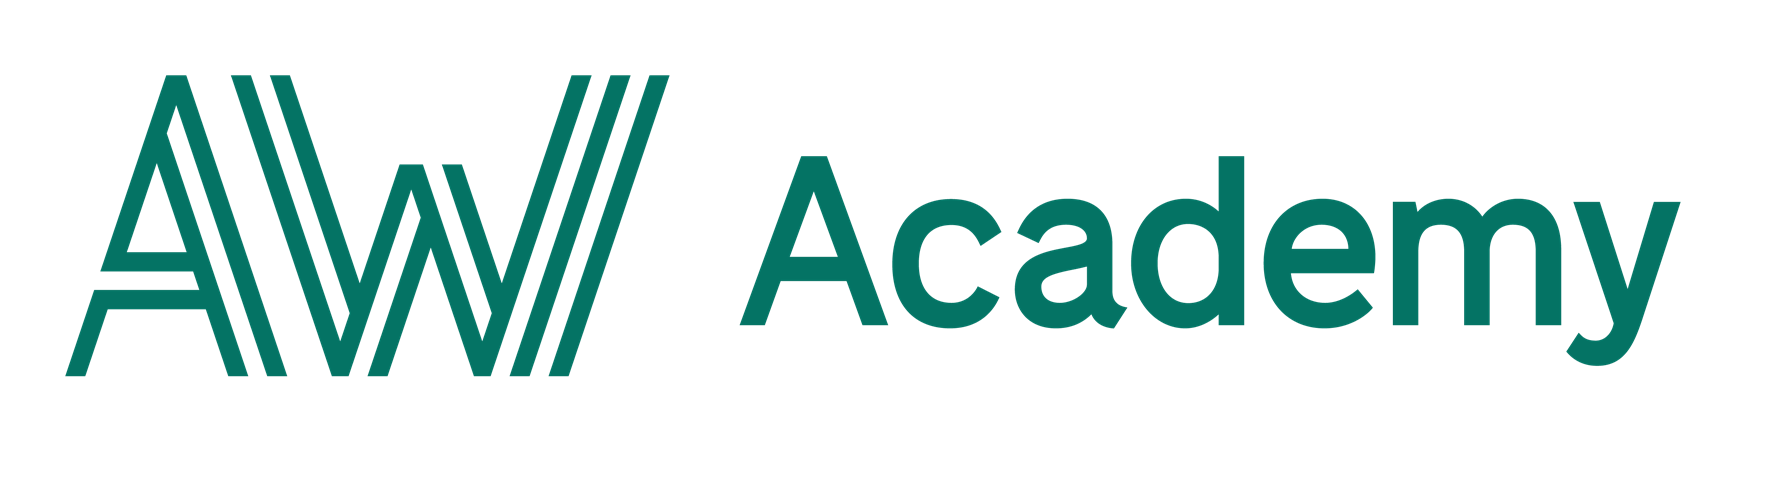 Lär dig C#.NET Fullstack via AW Academy och starta din nya karriär inom IT-branschen